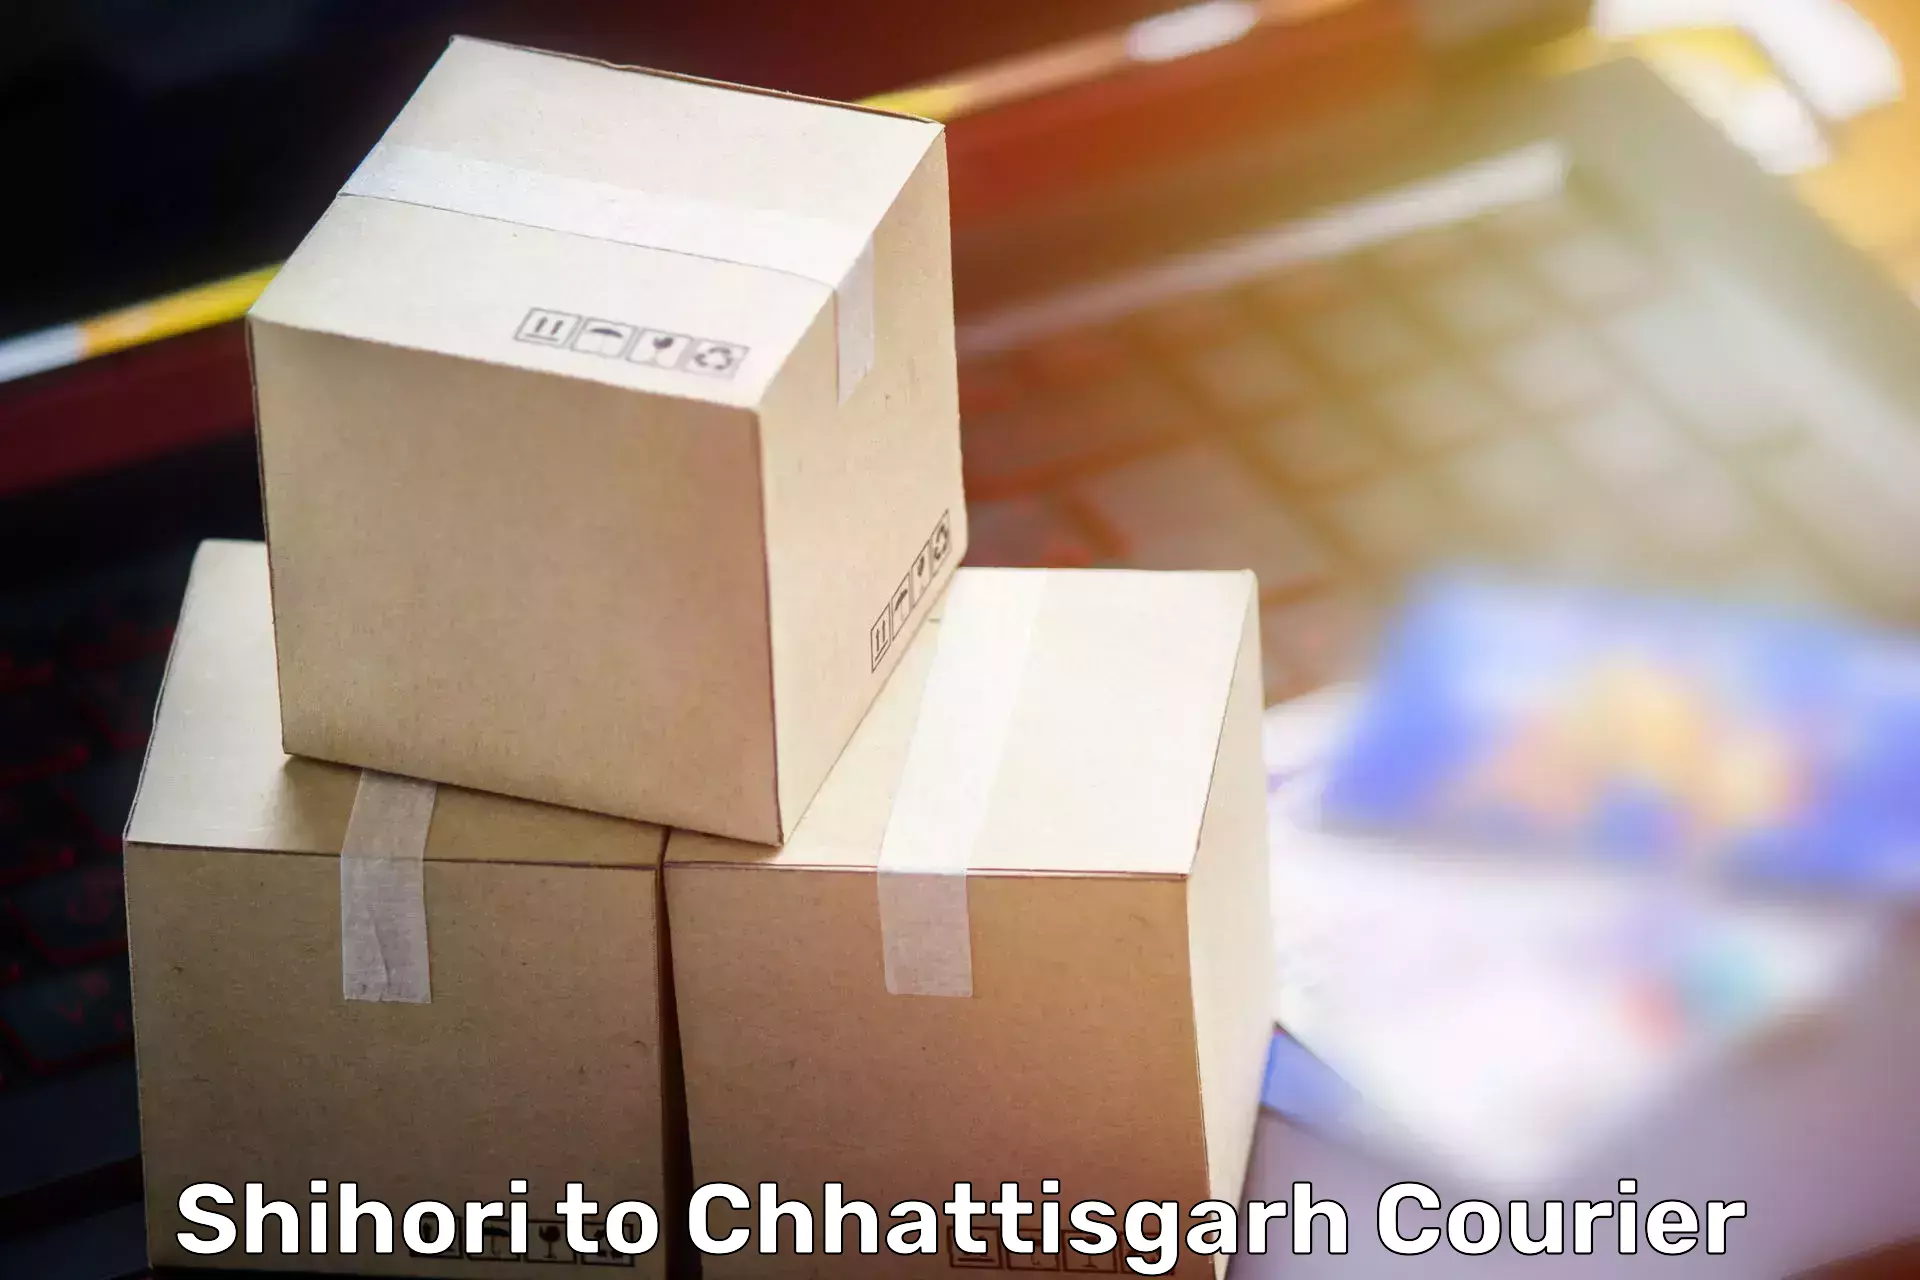 Furniture delivery service Shihori to Chirimiri